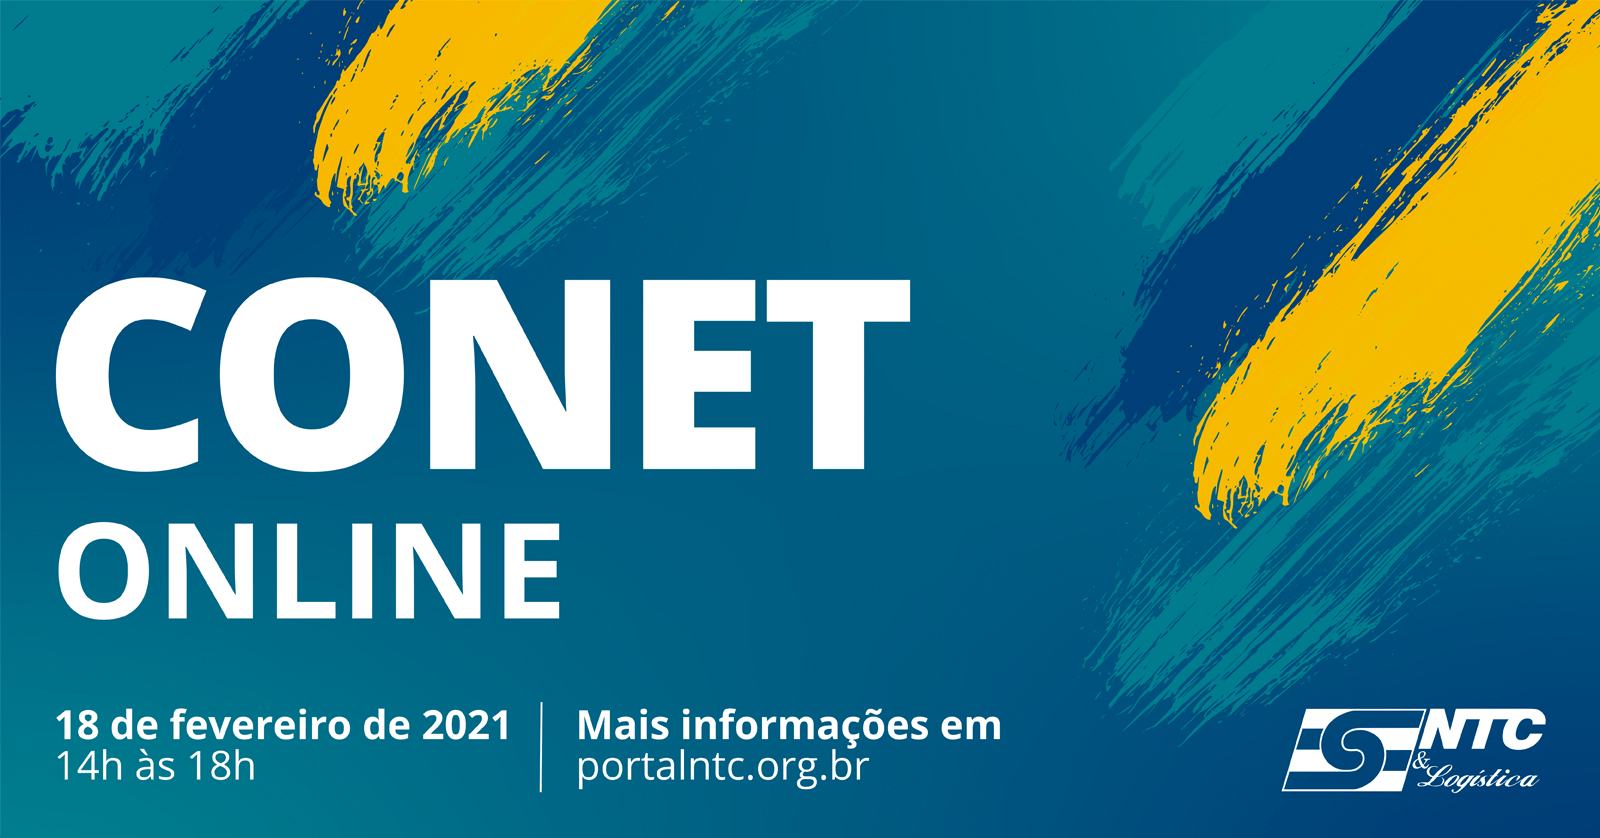 CONET ONLINE 18.2.2021